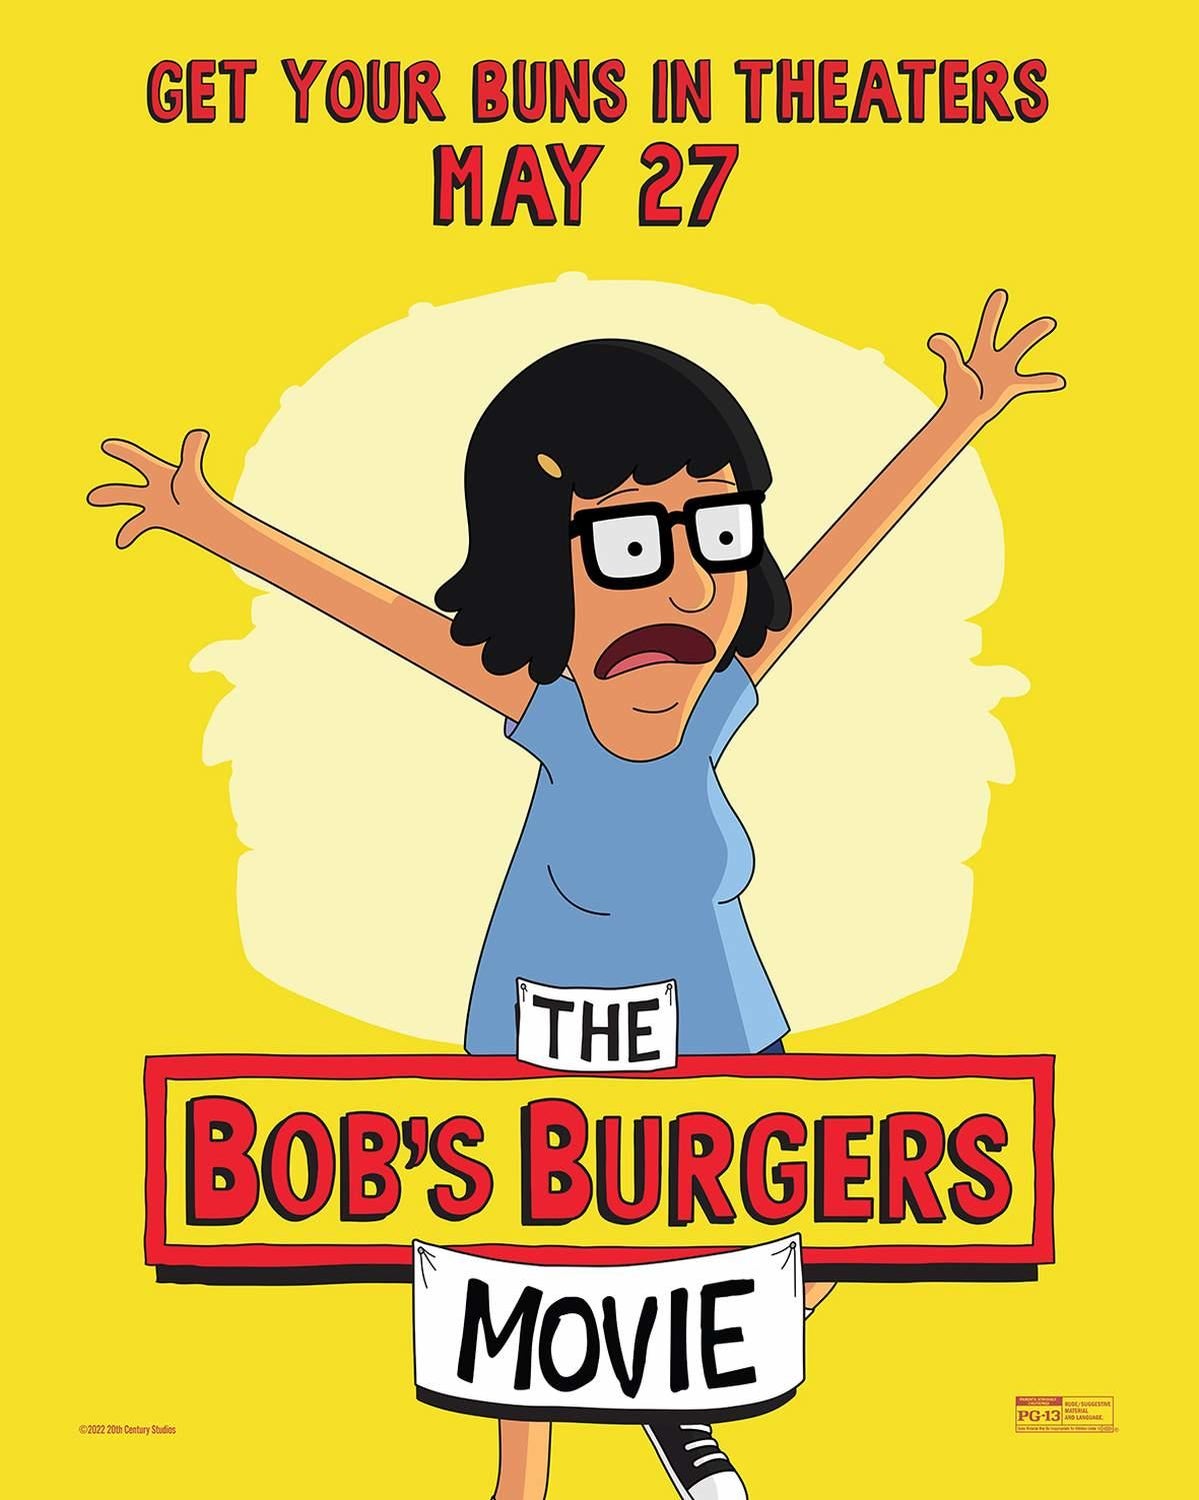 bobs-burgers-movie-posters-002.jpg